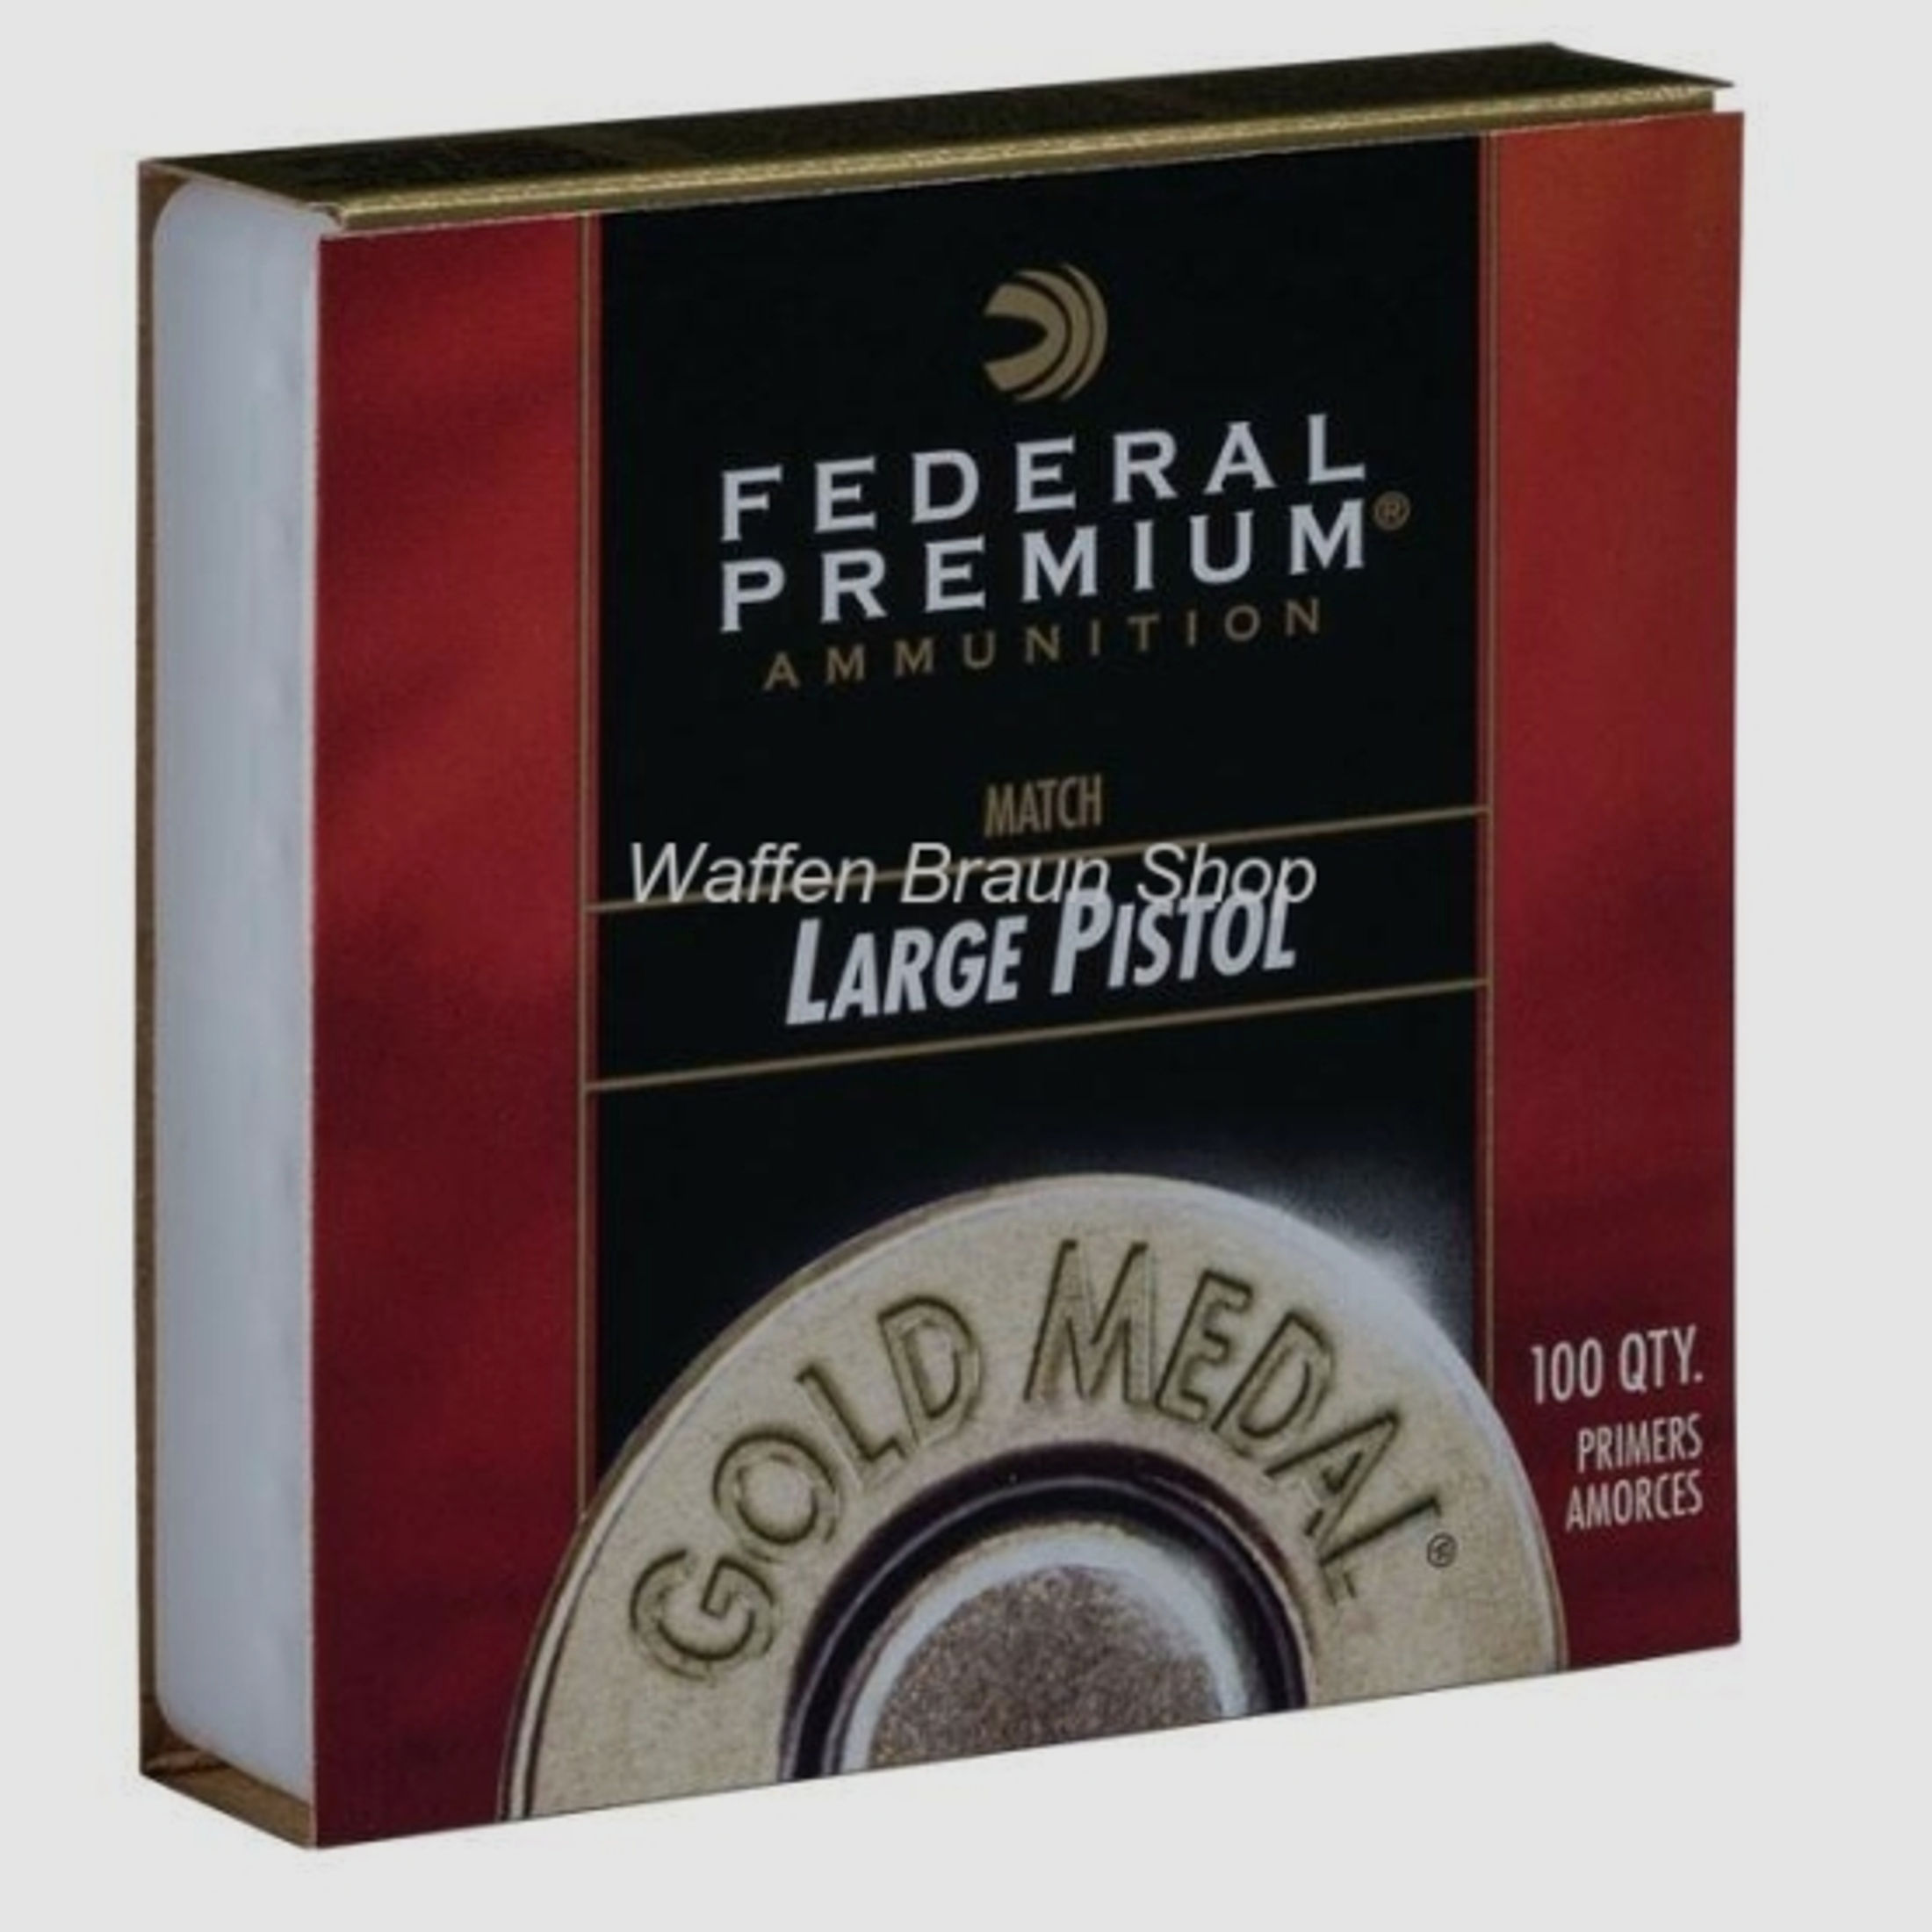 Federal Zündhütchen Gold Medal Large Pistol #GM150M